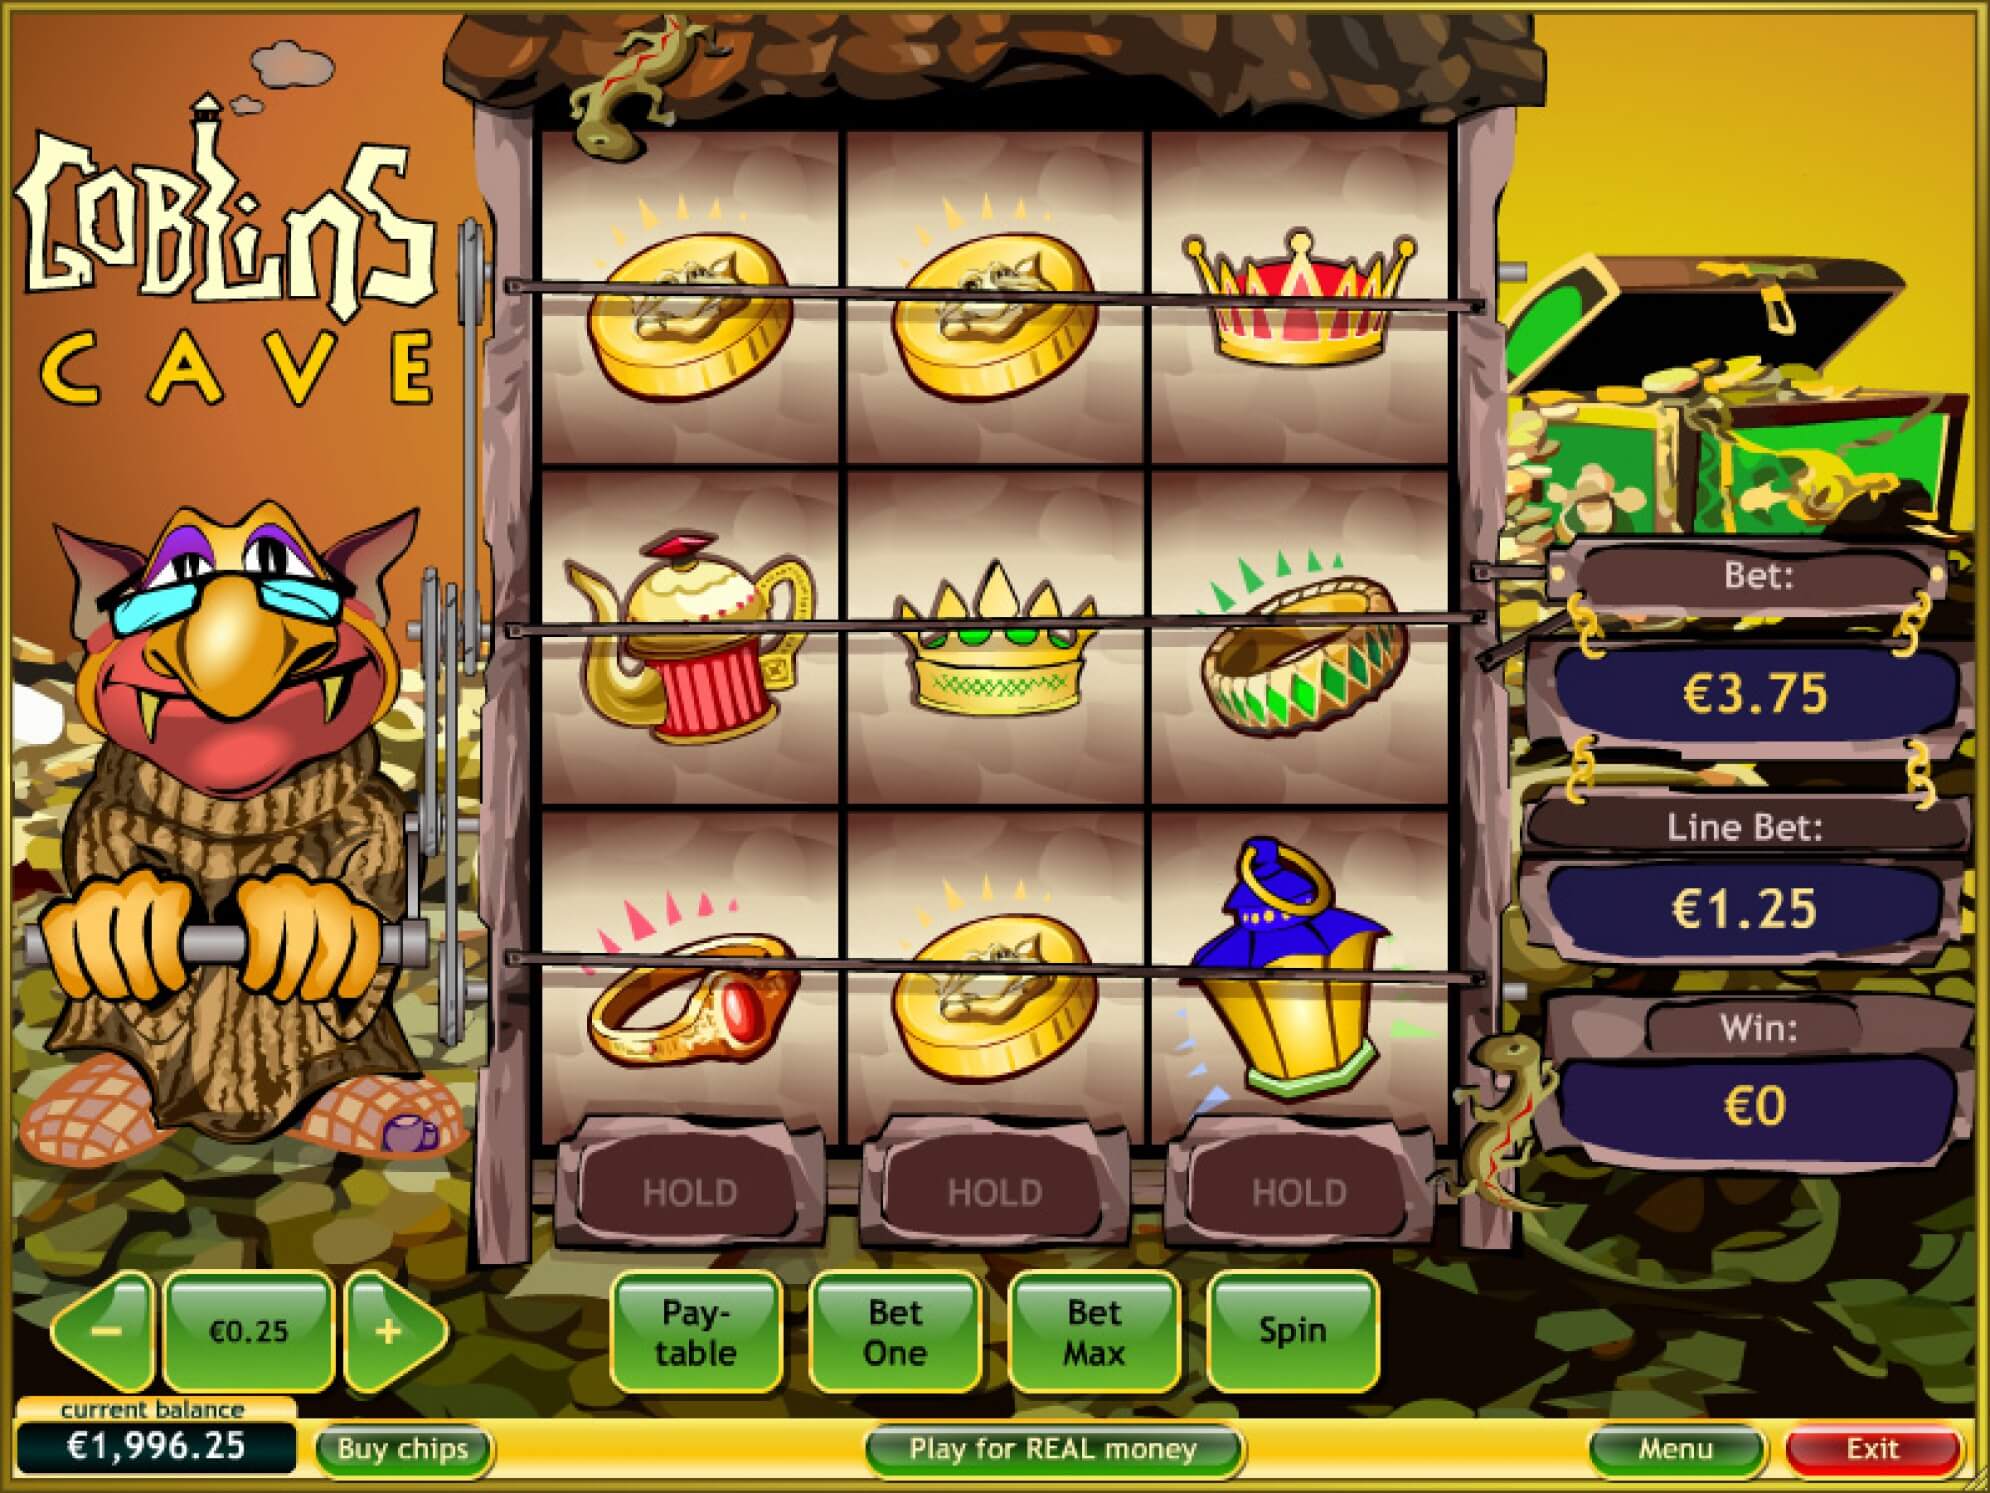 Слоты «Goblin’s Cave» — в казино Вулкан играть онлайн